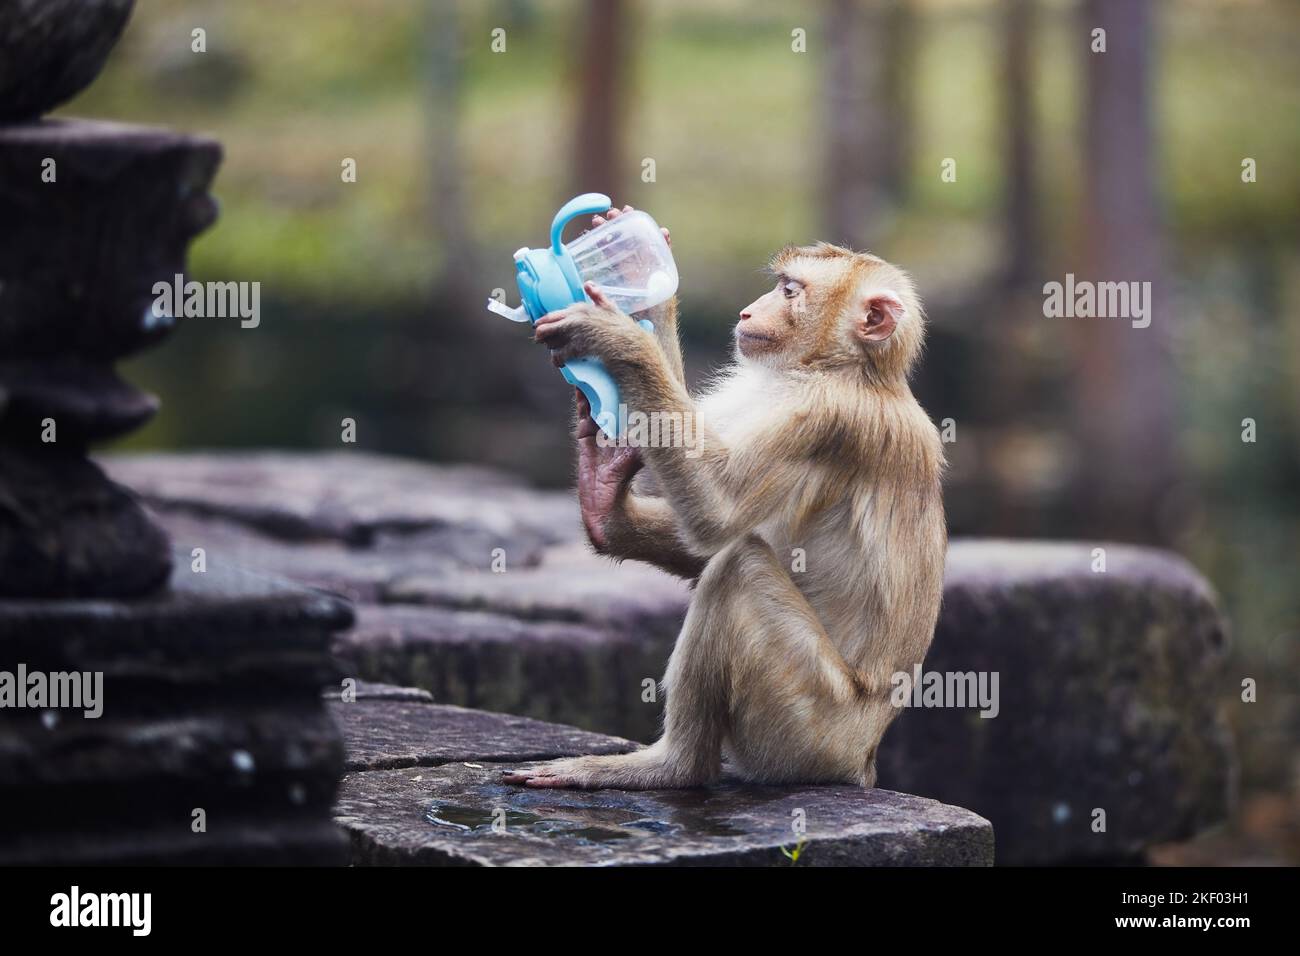 Affe versucht, aus der Babyflasche zu trinken, nachdem er sie von Touristen gestohlen hat. Themen wie Tierverhalten und Plastikmüll in der Natur. Stockfoto